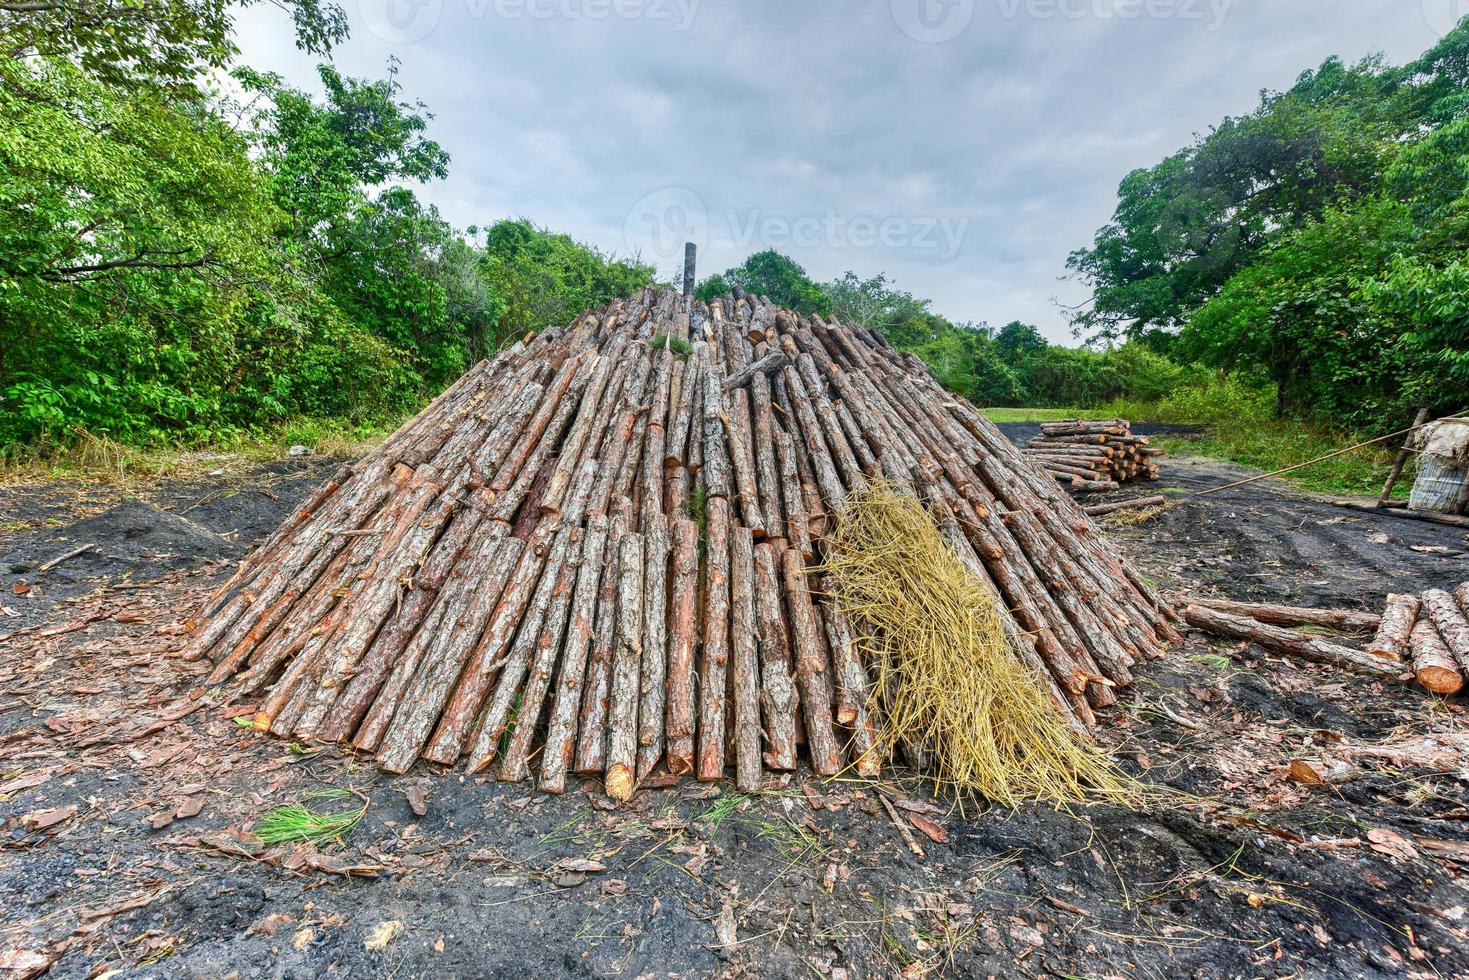 legna pira essere preparato per il creazione di carbone a partire dal pino logs nel vinali, Cuba. foto